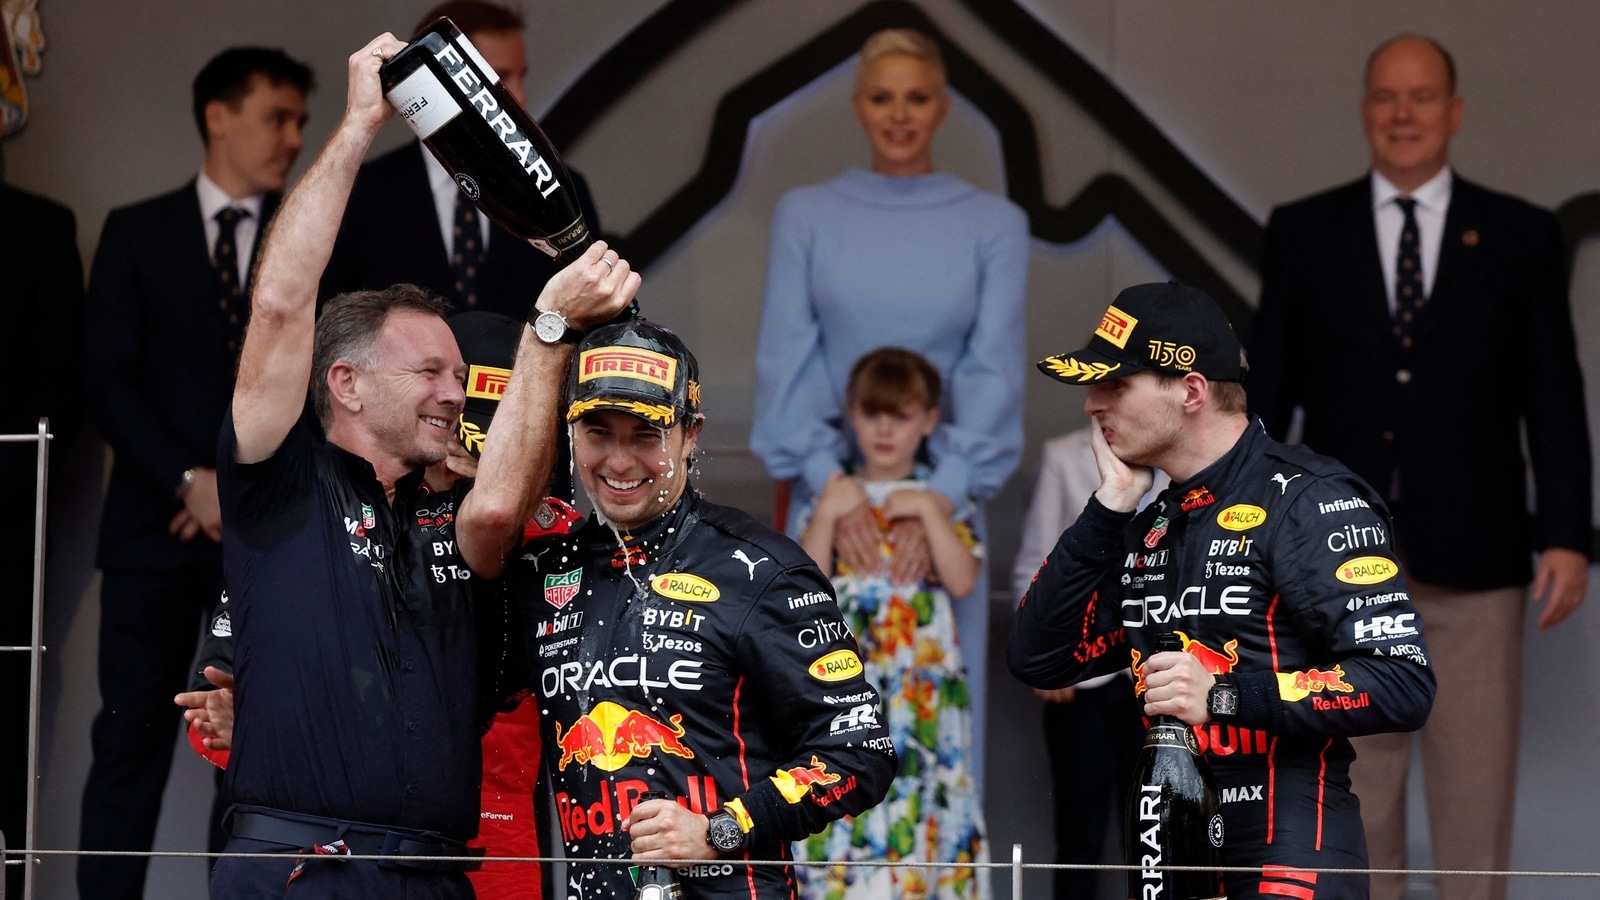 McLaren never expected F1 podium pace in Monaco